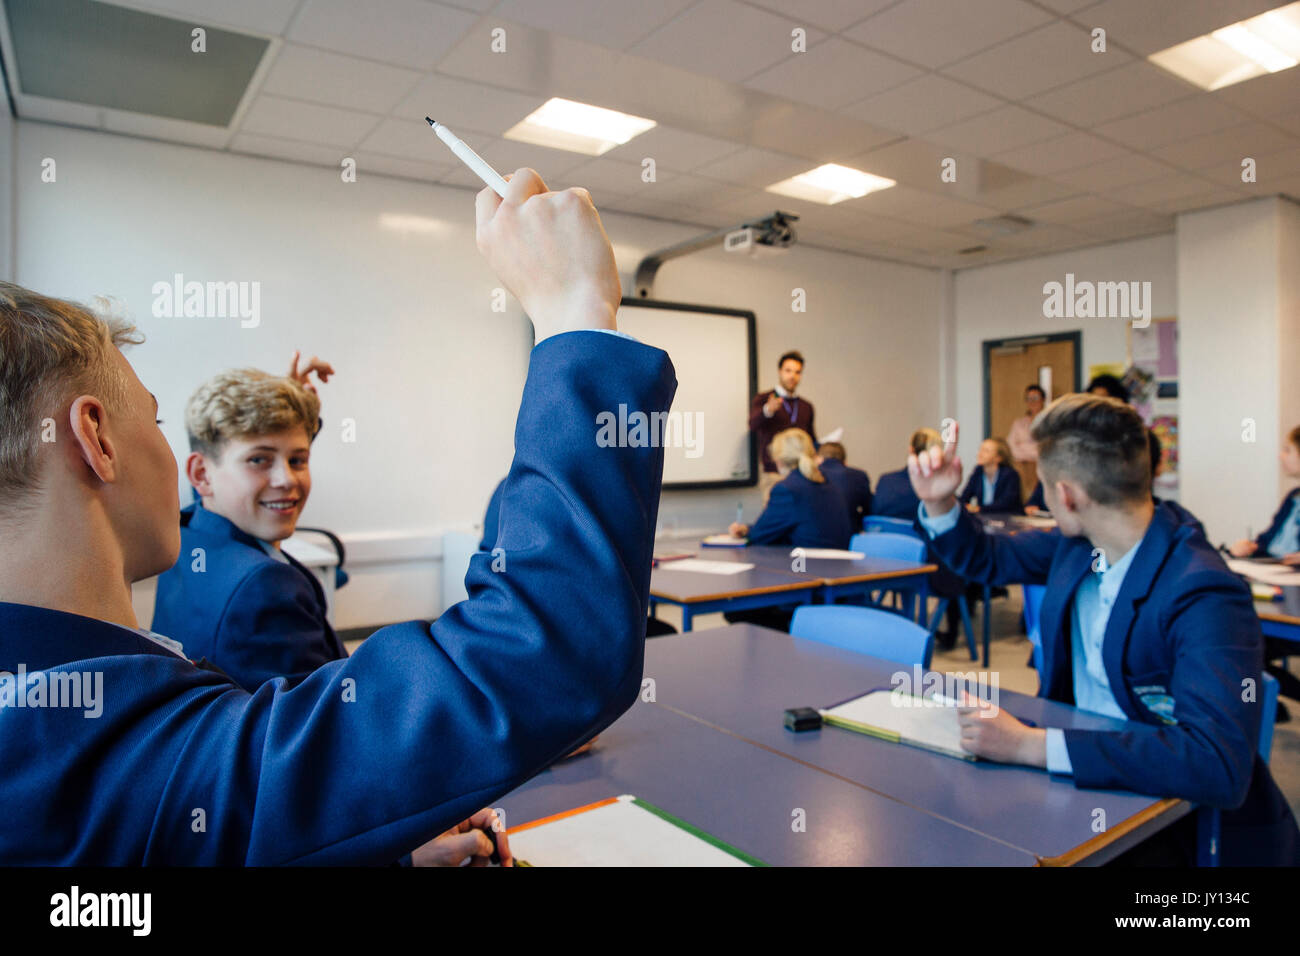 Sicht der Schuß eines High School lesson, wo der Lehrer eine Frage gestellt hat und einige Studenten haben ihre Hände bis zu beantworten. Stockfoto